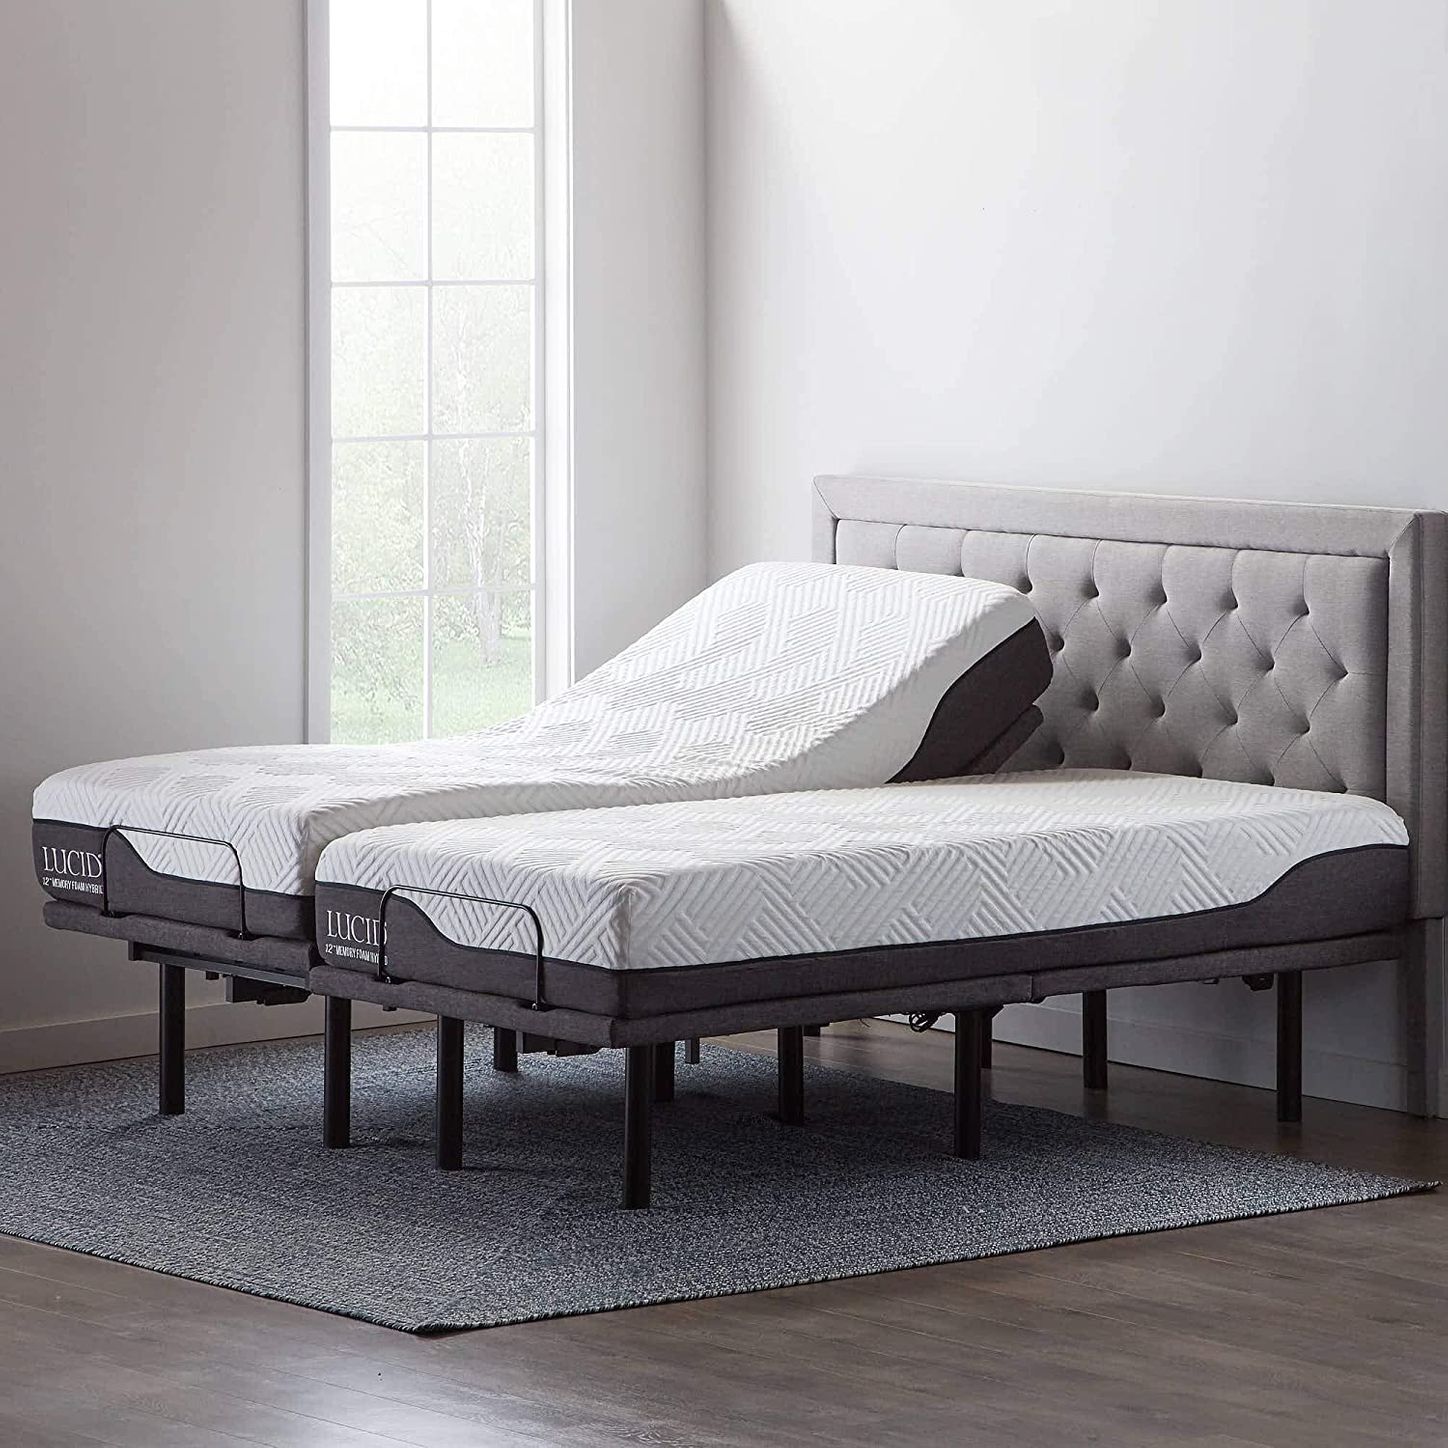 10 Best Adjustable Bed Bases 2021 The, Adjustable Bed Base King